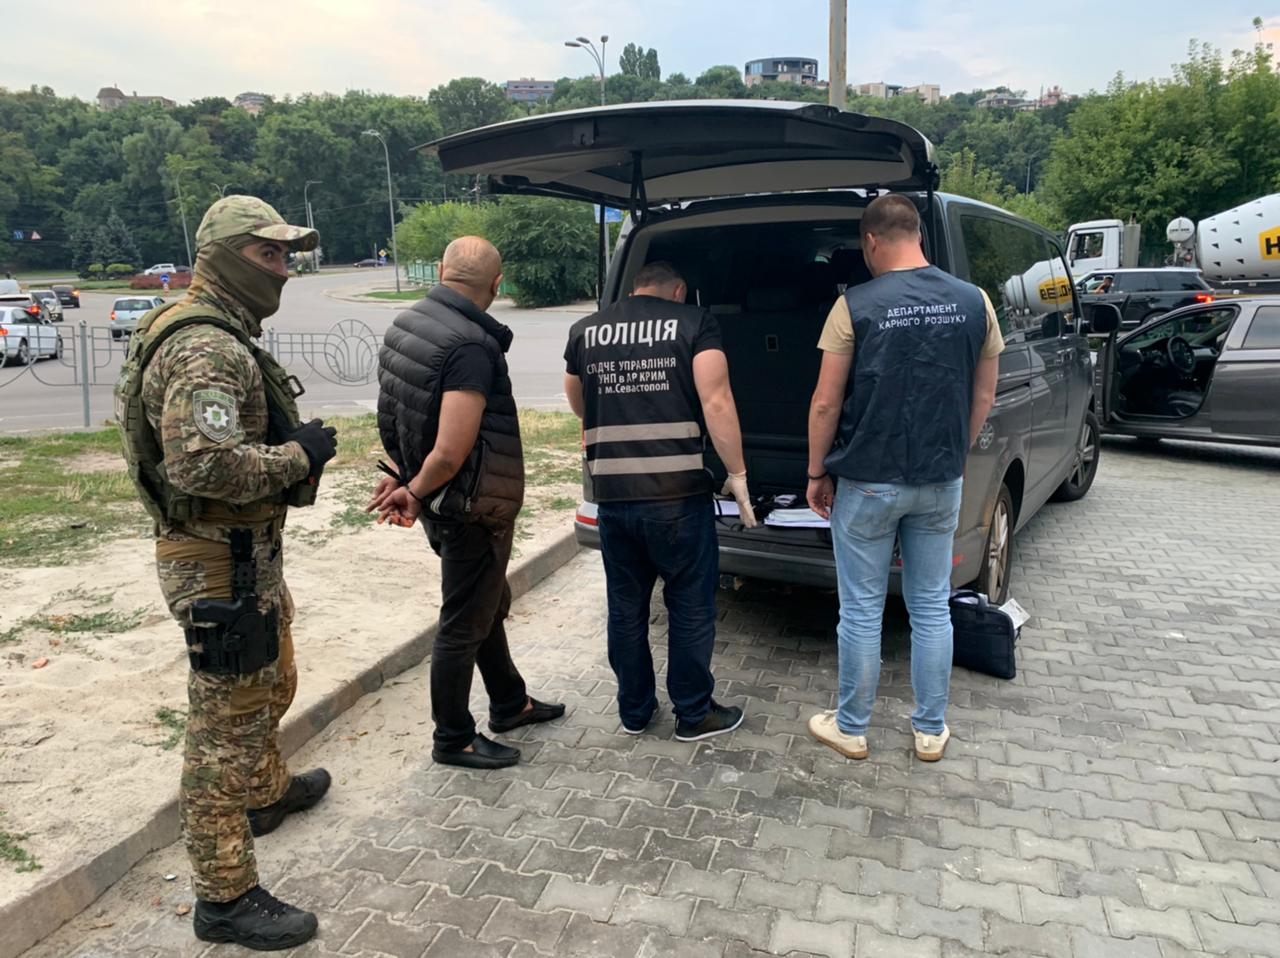 Харьковские правоохранители задержали мошенников, которые сбывали поддельные доллары США